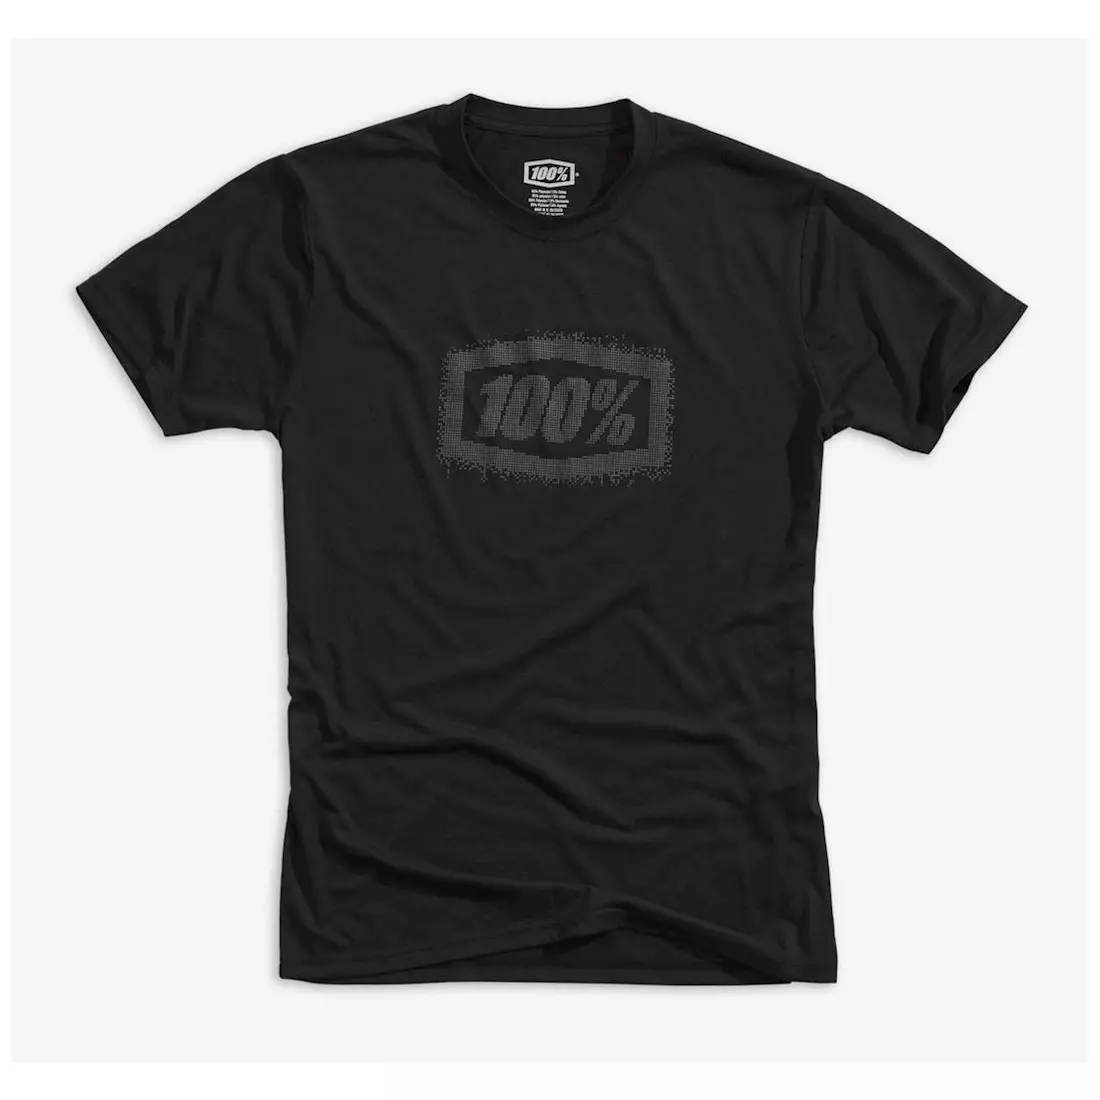 100% pánske tričko s krátkym rukávom positive tech tee black STO-35011-001-11